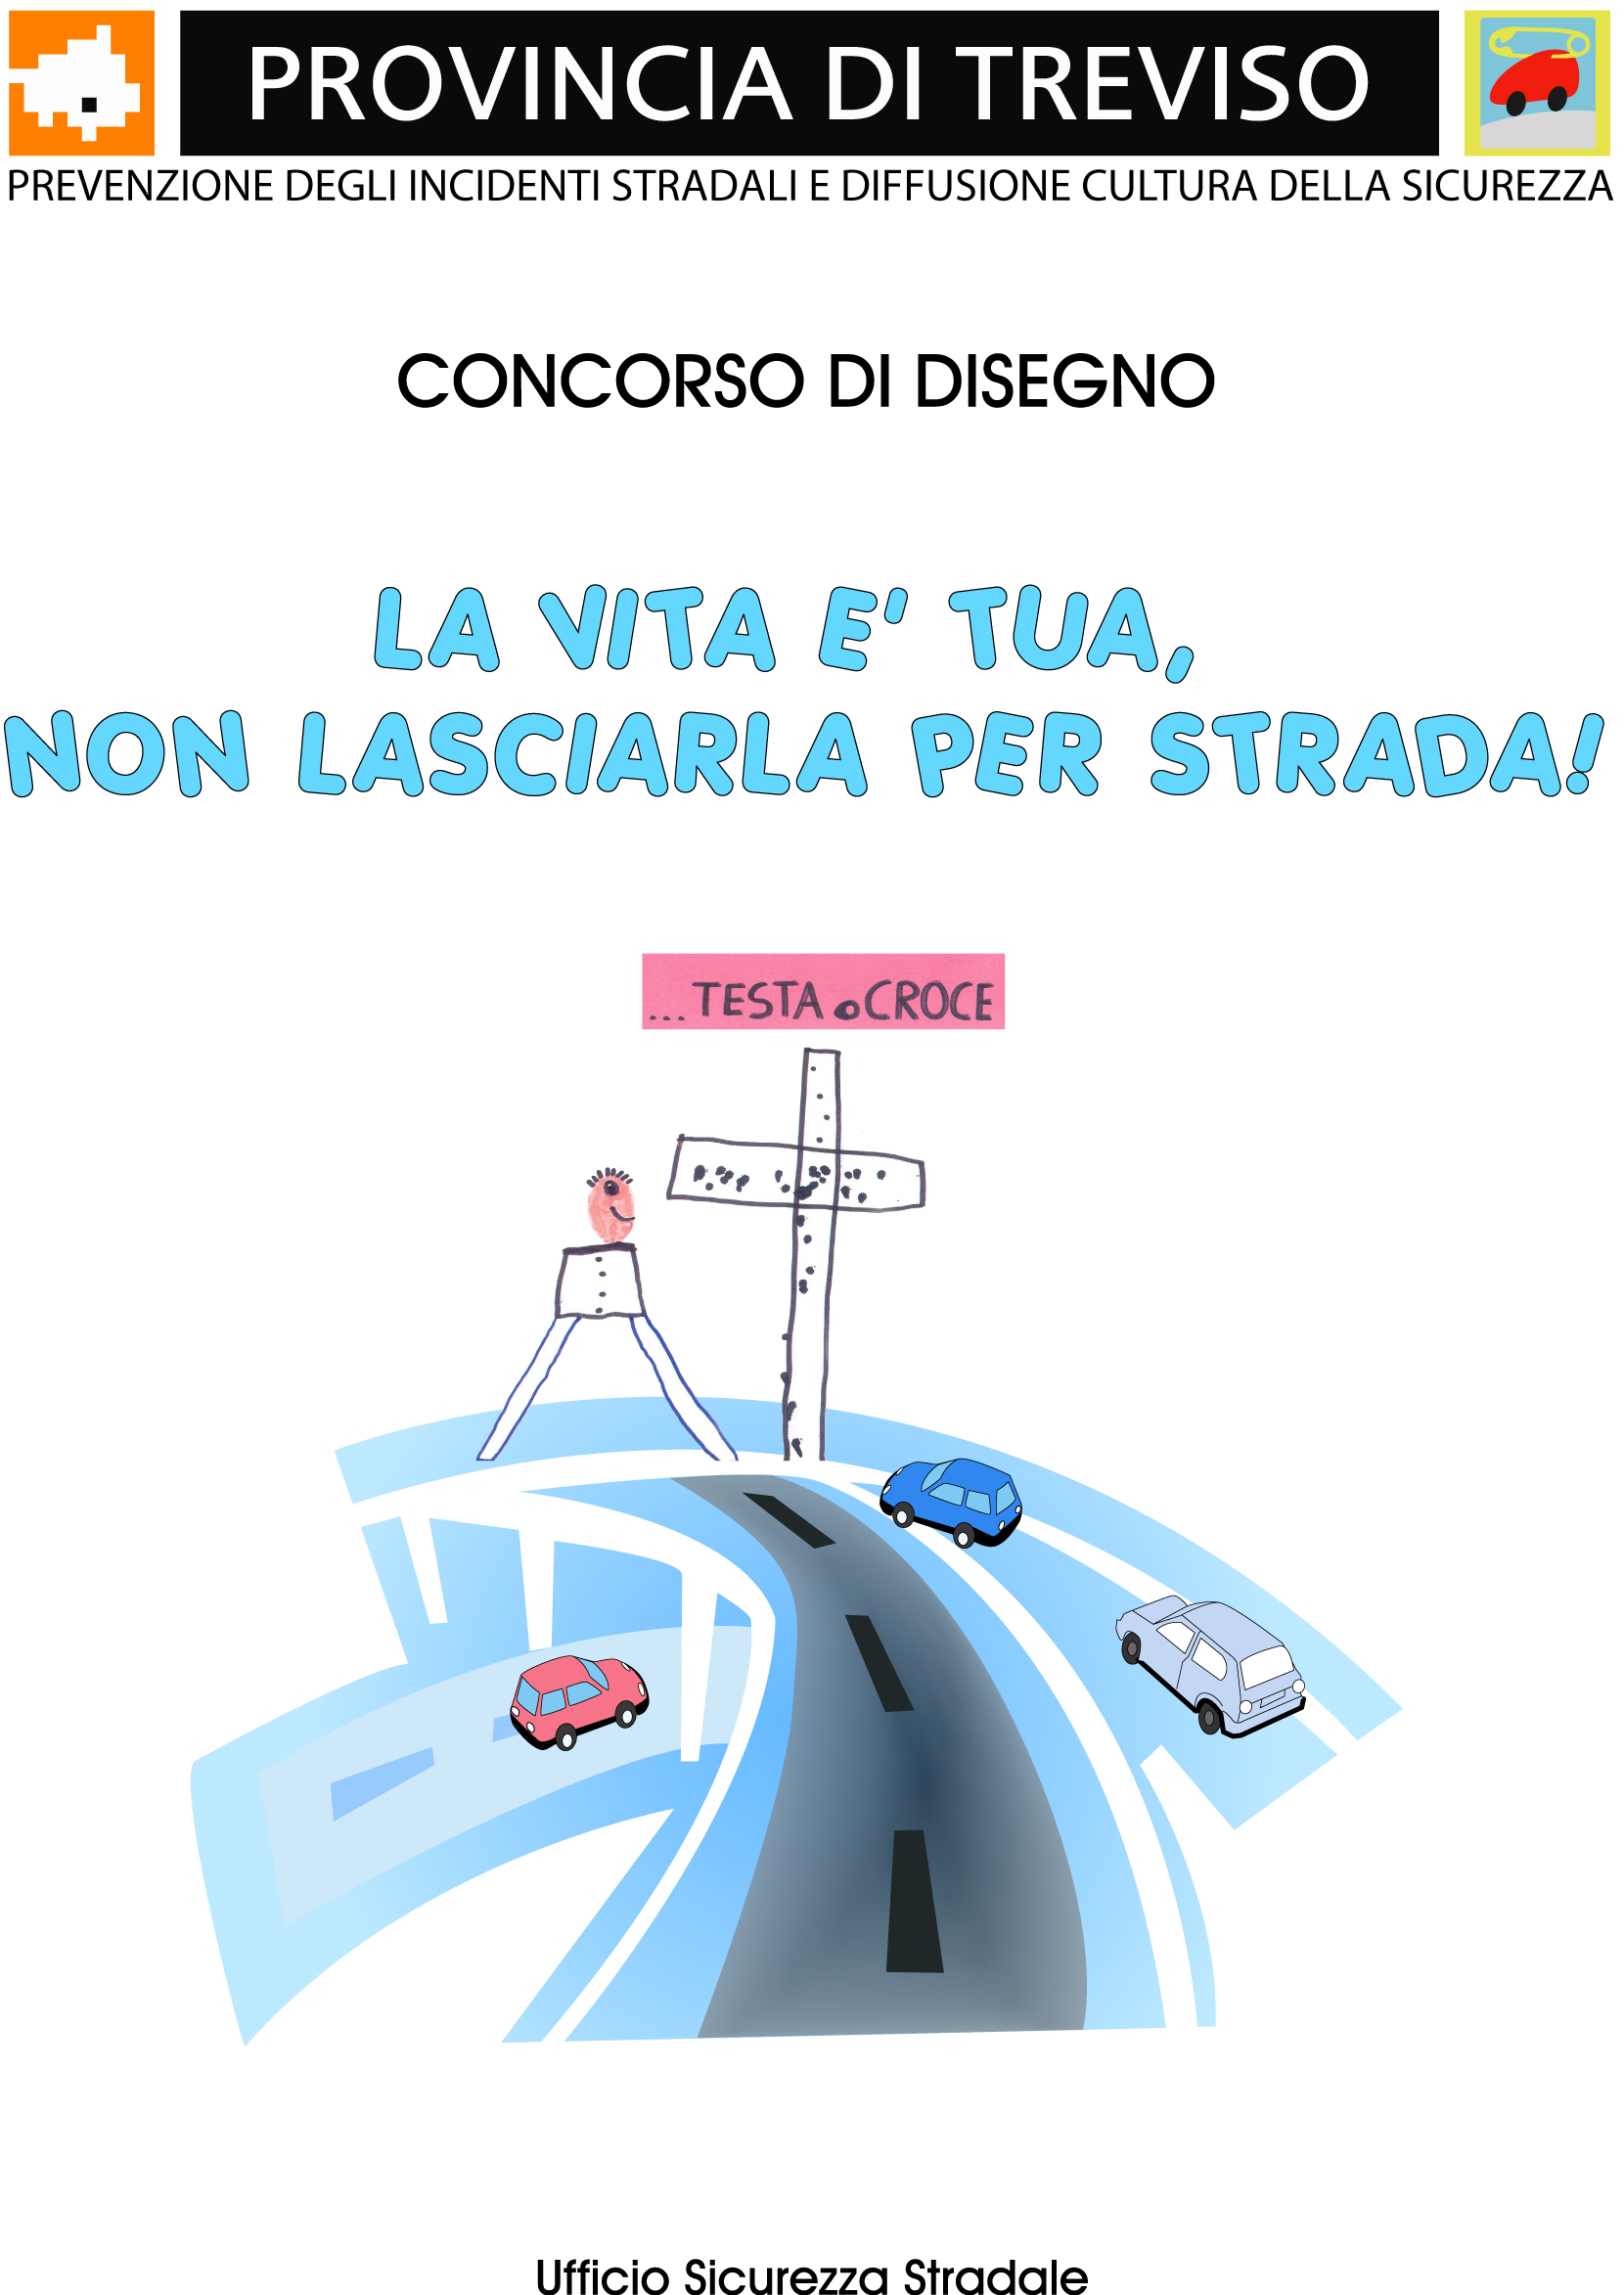 Sicurezza Stradale Treviso Concorsi Di Disegno Non Abbiamo Sette Vite Come I Gatti La Strada Non E Un Gioco Per Strada Sicuri La Vita E Tua Non Lasciarla Per Strada